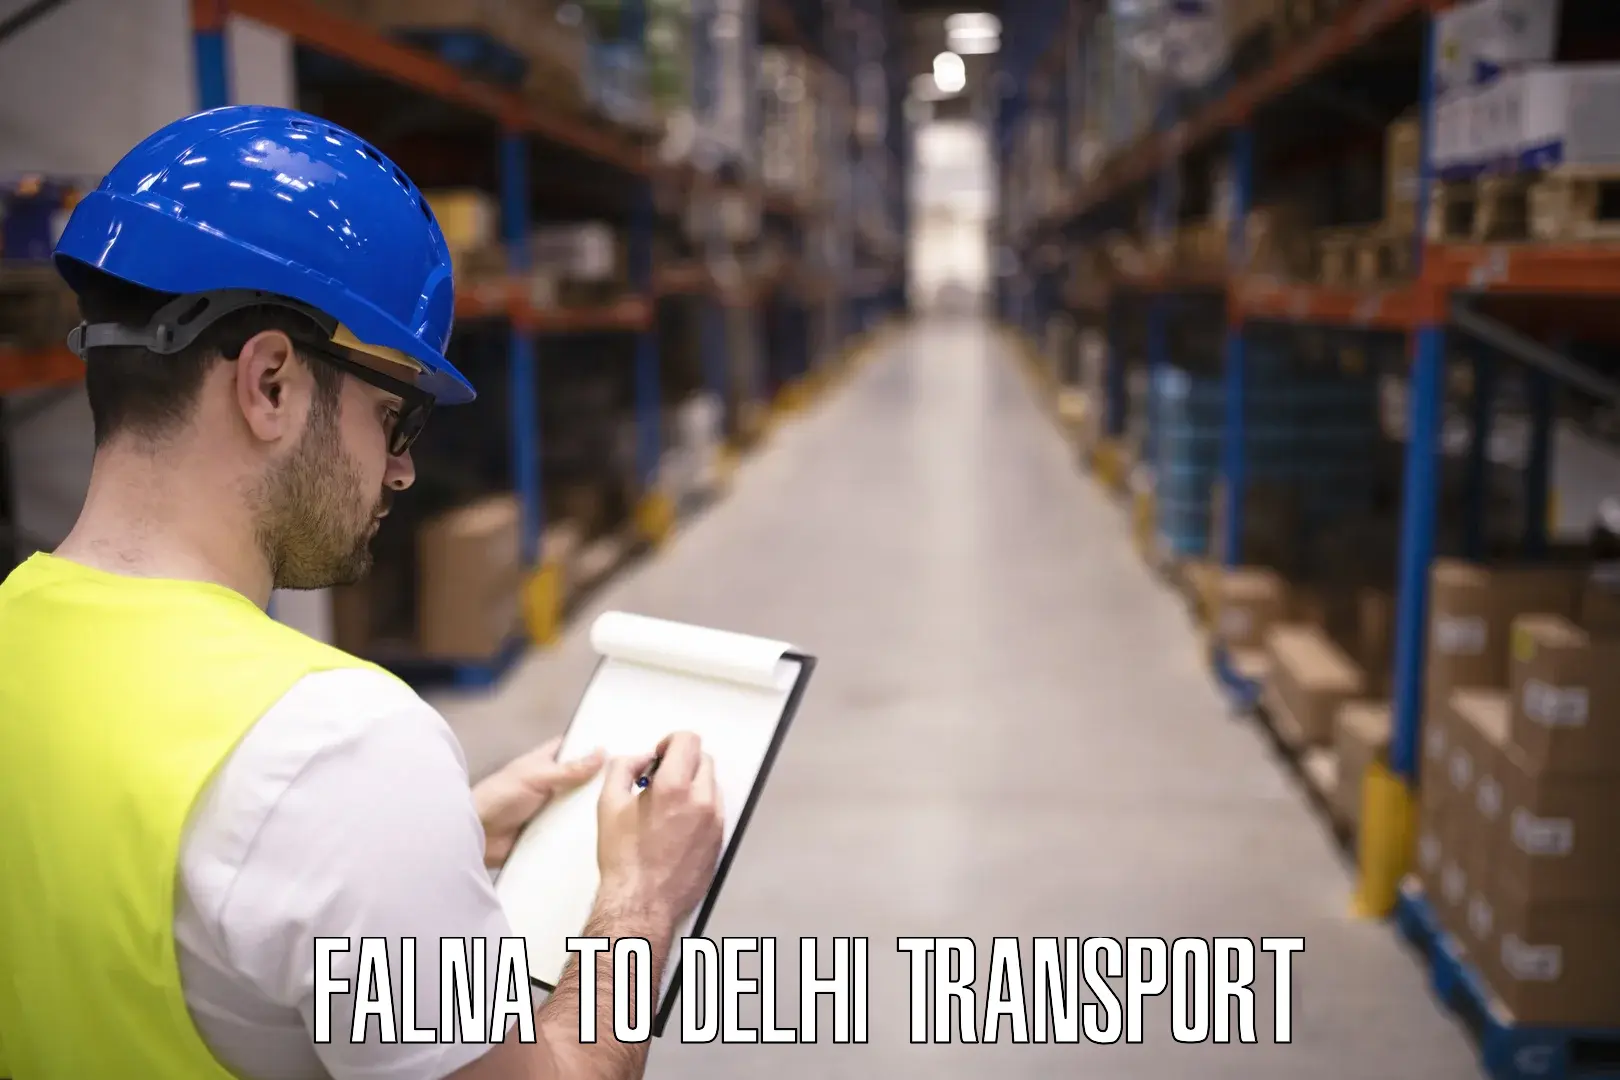 Transport services Falna to IIT Delhi